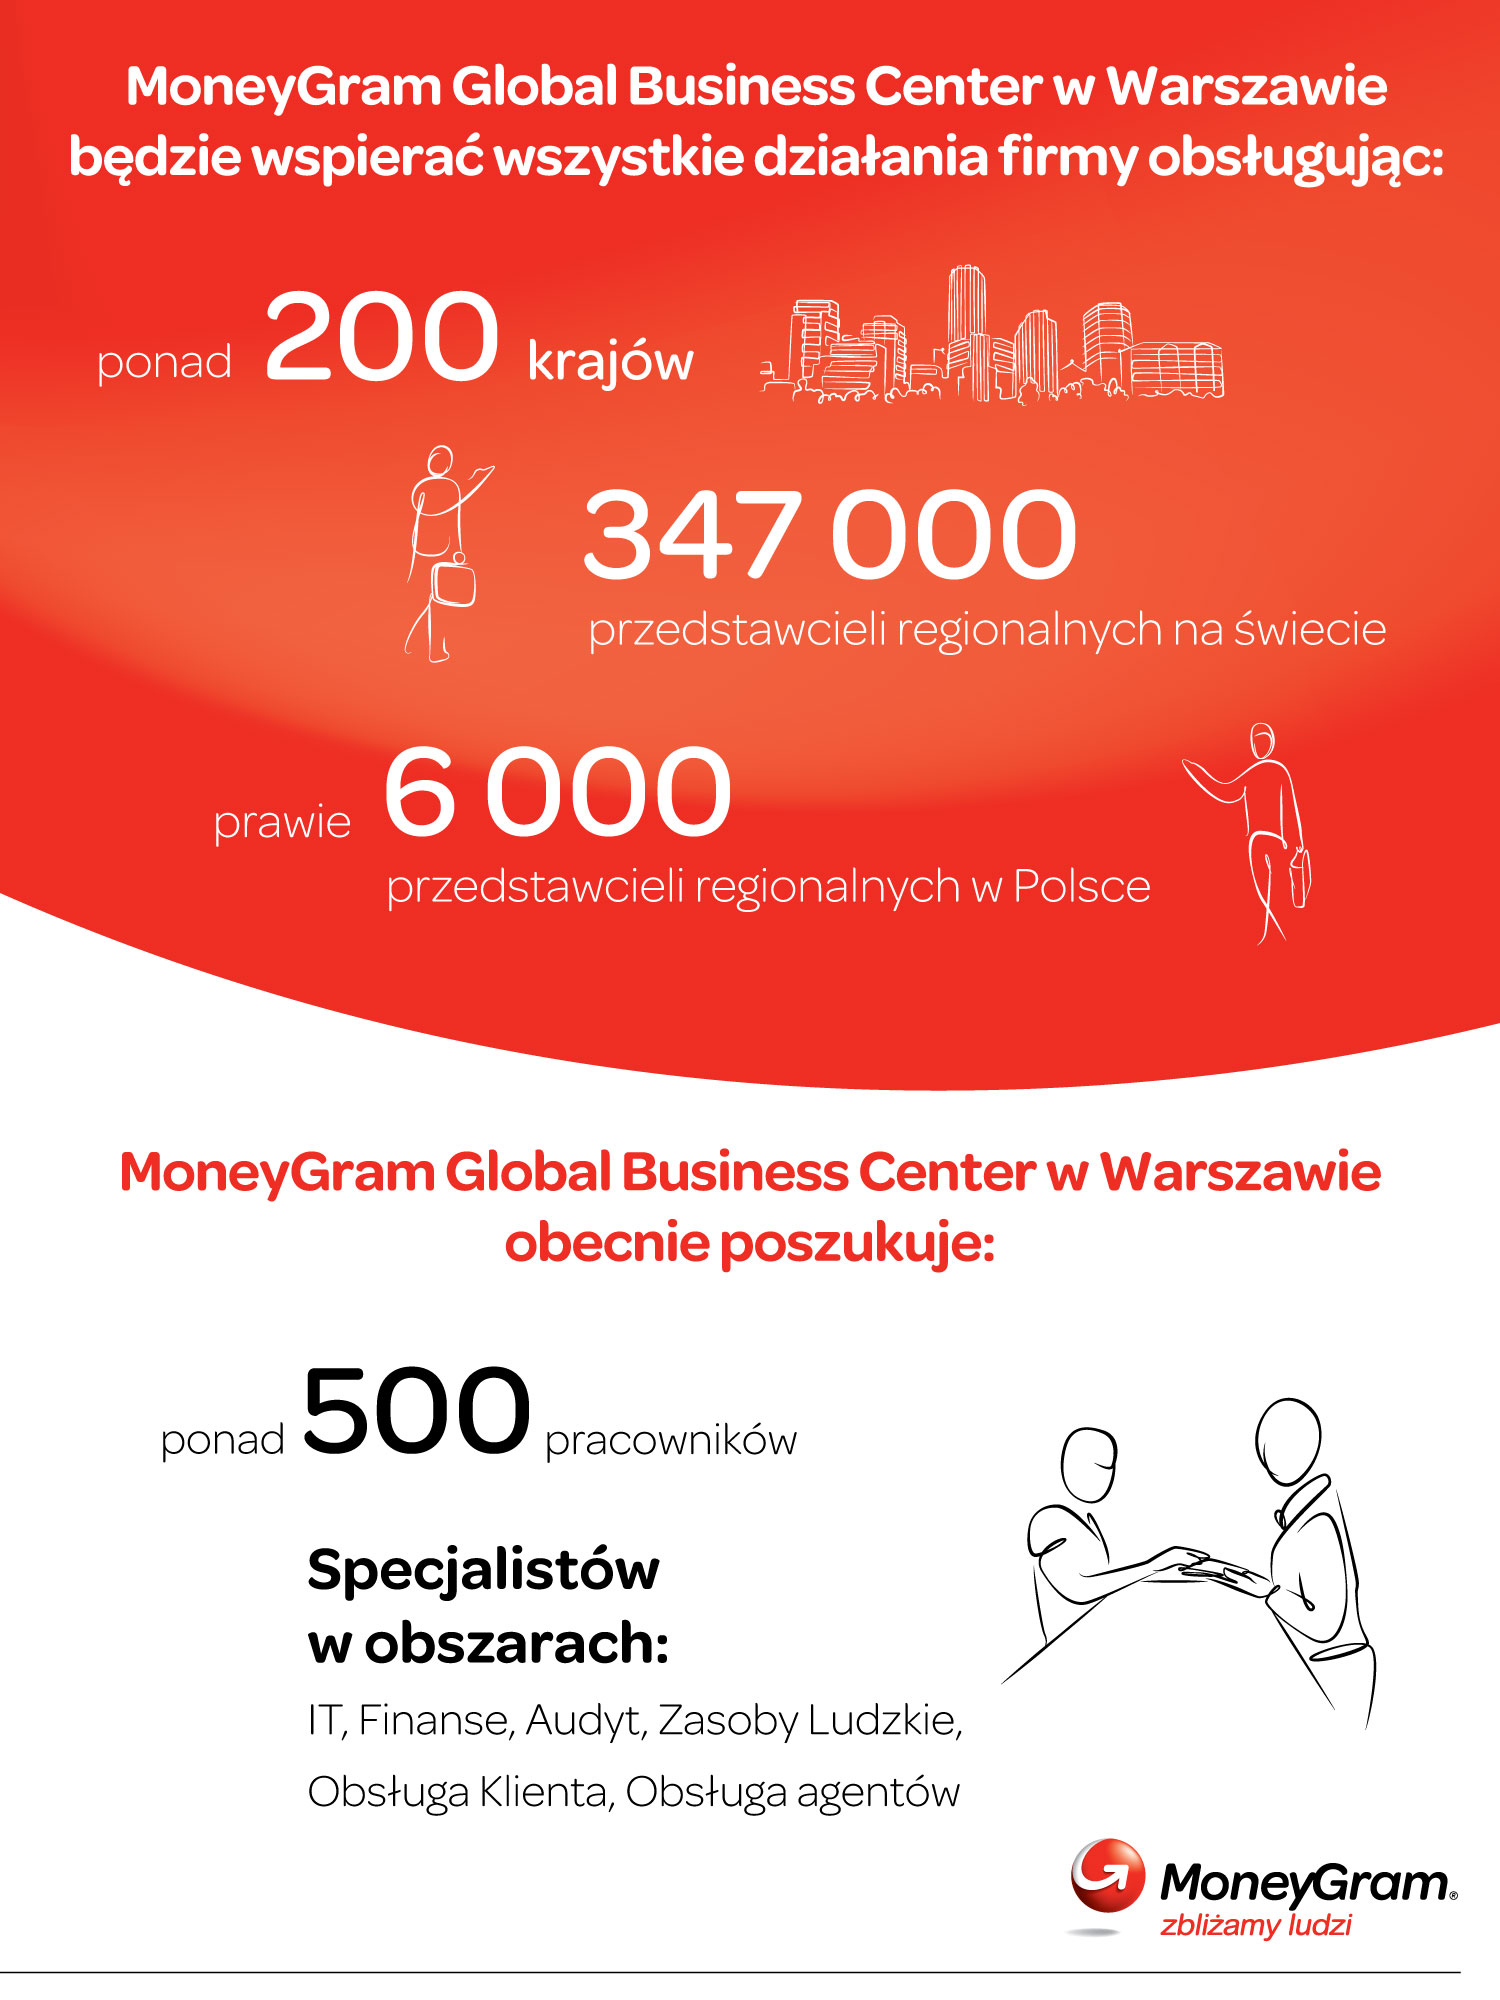 Warszawa sercem globalnych operacji firmy MoneyGram